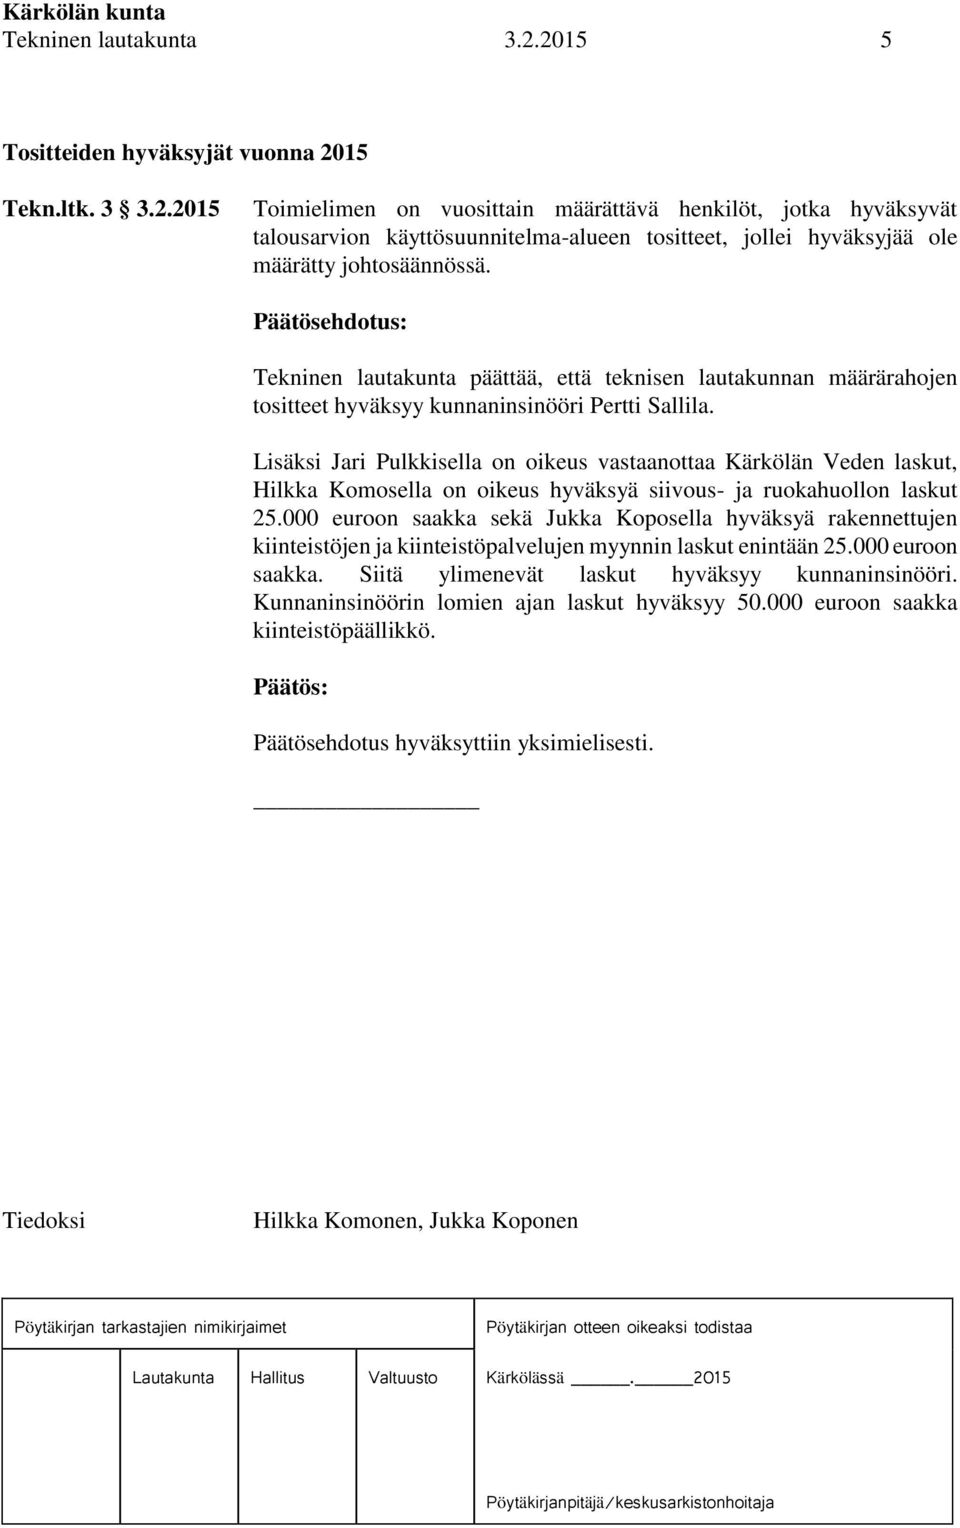 Lisäksi Jari Pulkkisella on oikeus vastaanottaa Kärkölän Veden laskut, Hilkka Komosella on oikeus hyväksyä siivous- ja ruokahuollon laskut 25.